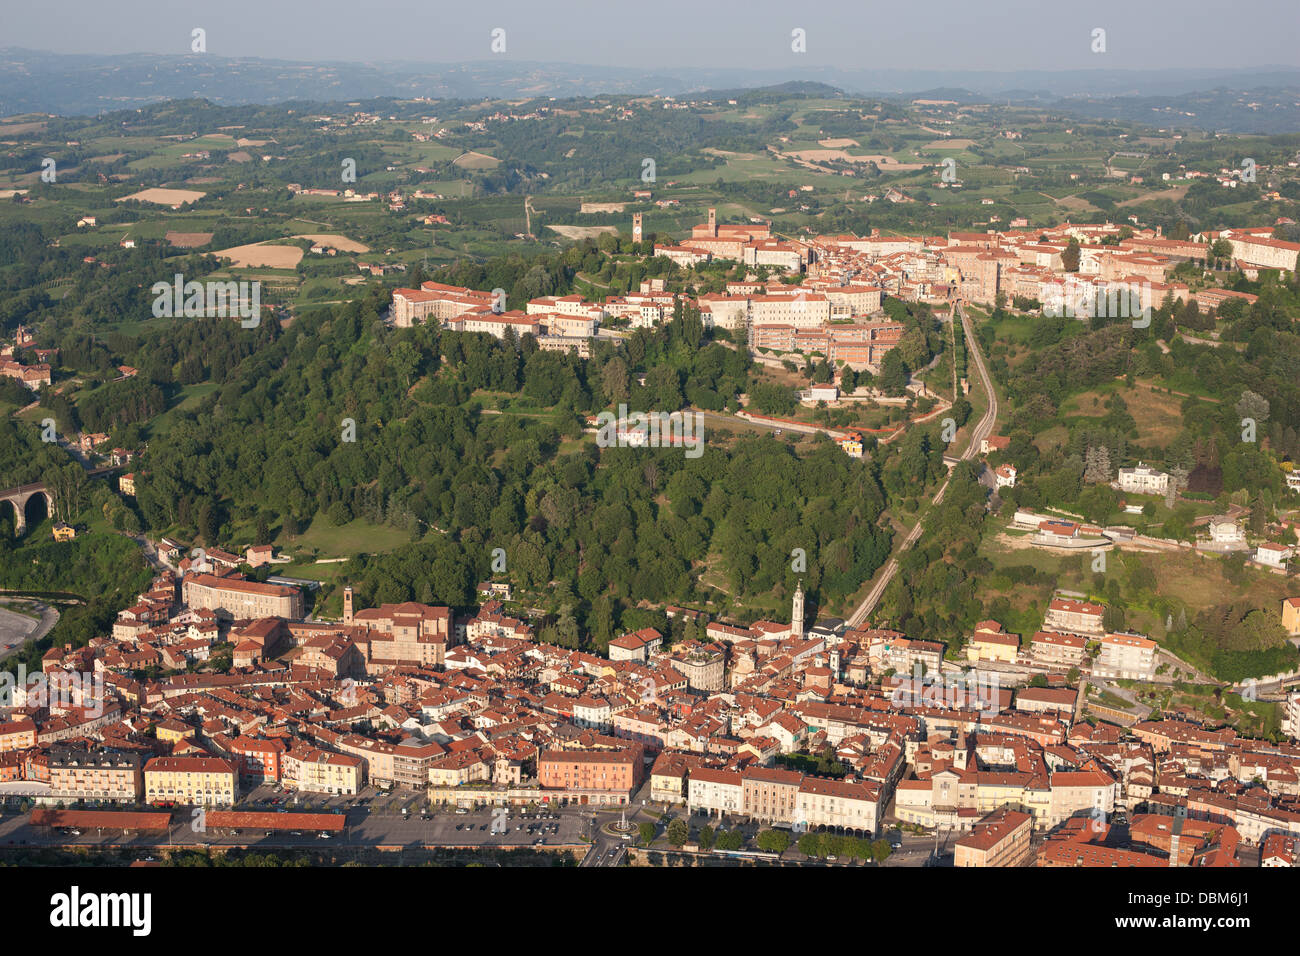 VISTA AEREA. Medievale città in cima alla collina che domina la città più recente ai piedi della collina. Mondovi, Provincia di Cuneo, Piemonte, Italia. Foto Stock